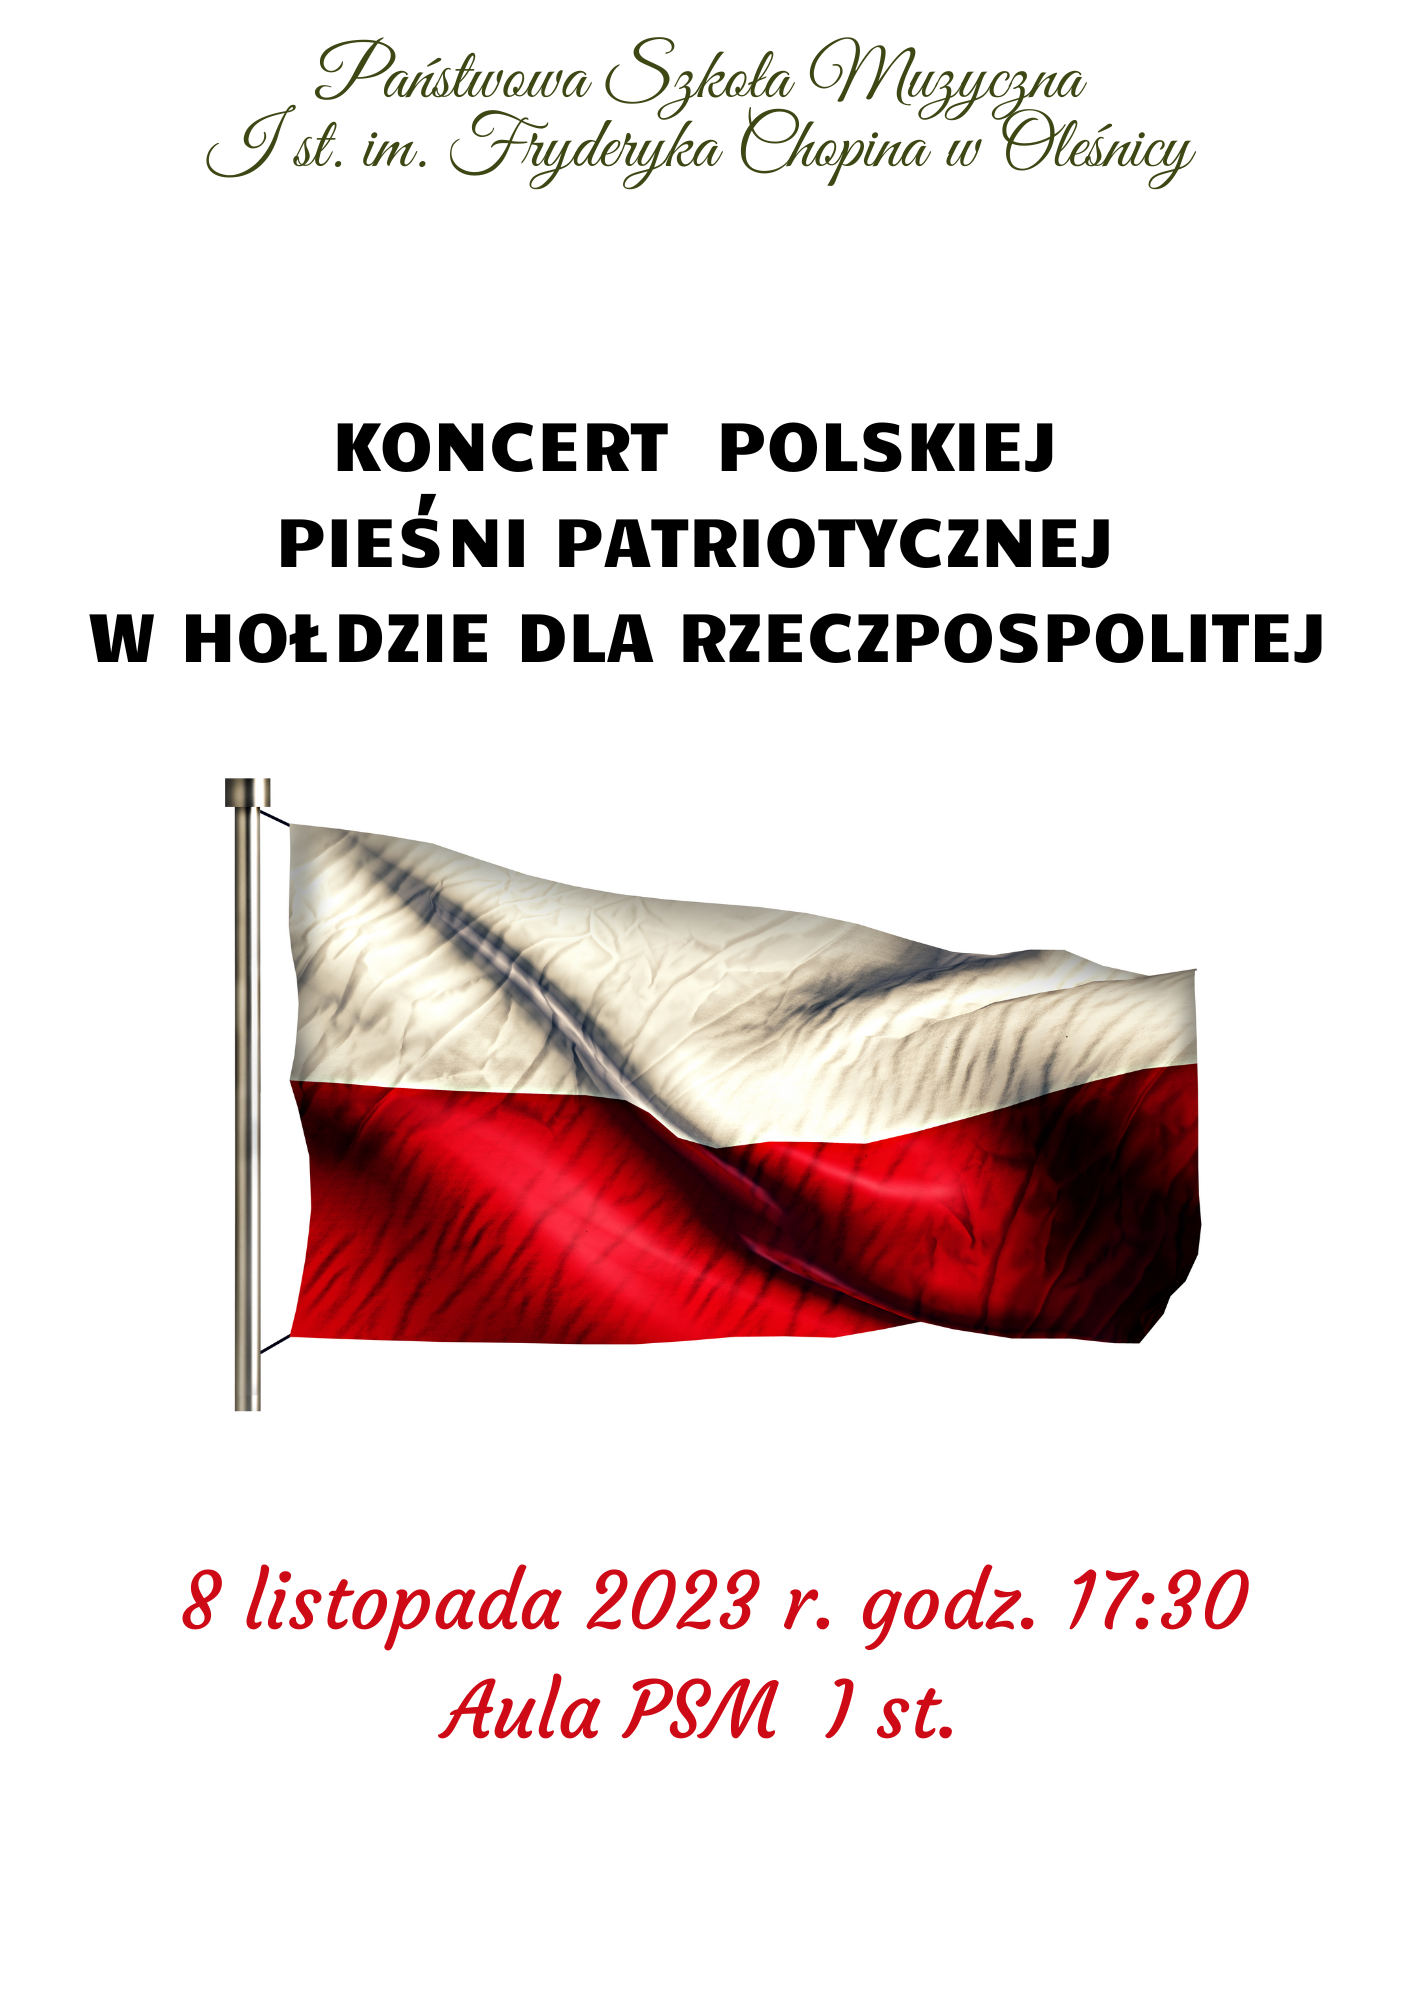 Koncert polskiej pieśni patriotycznej